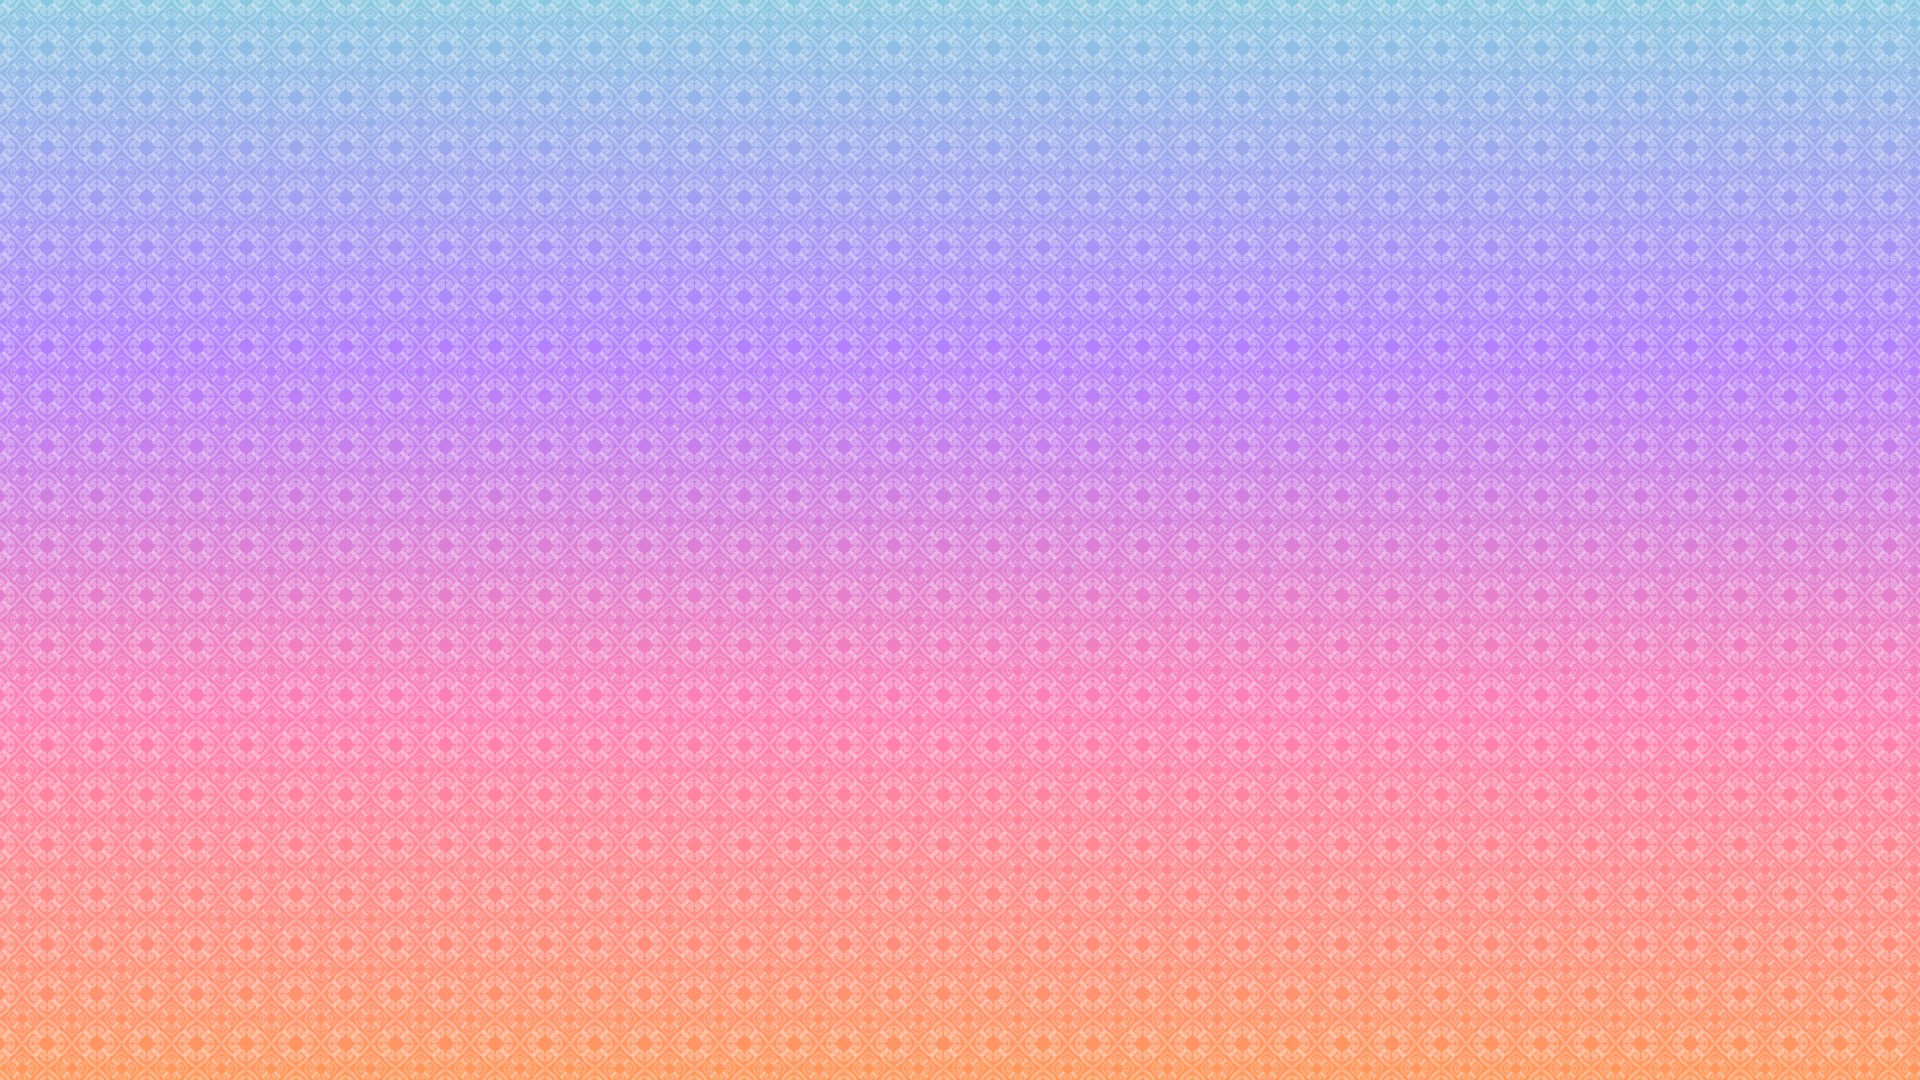 Pattern Horisontal Rainbow HD Wallpaper By Elideli On